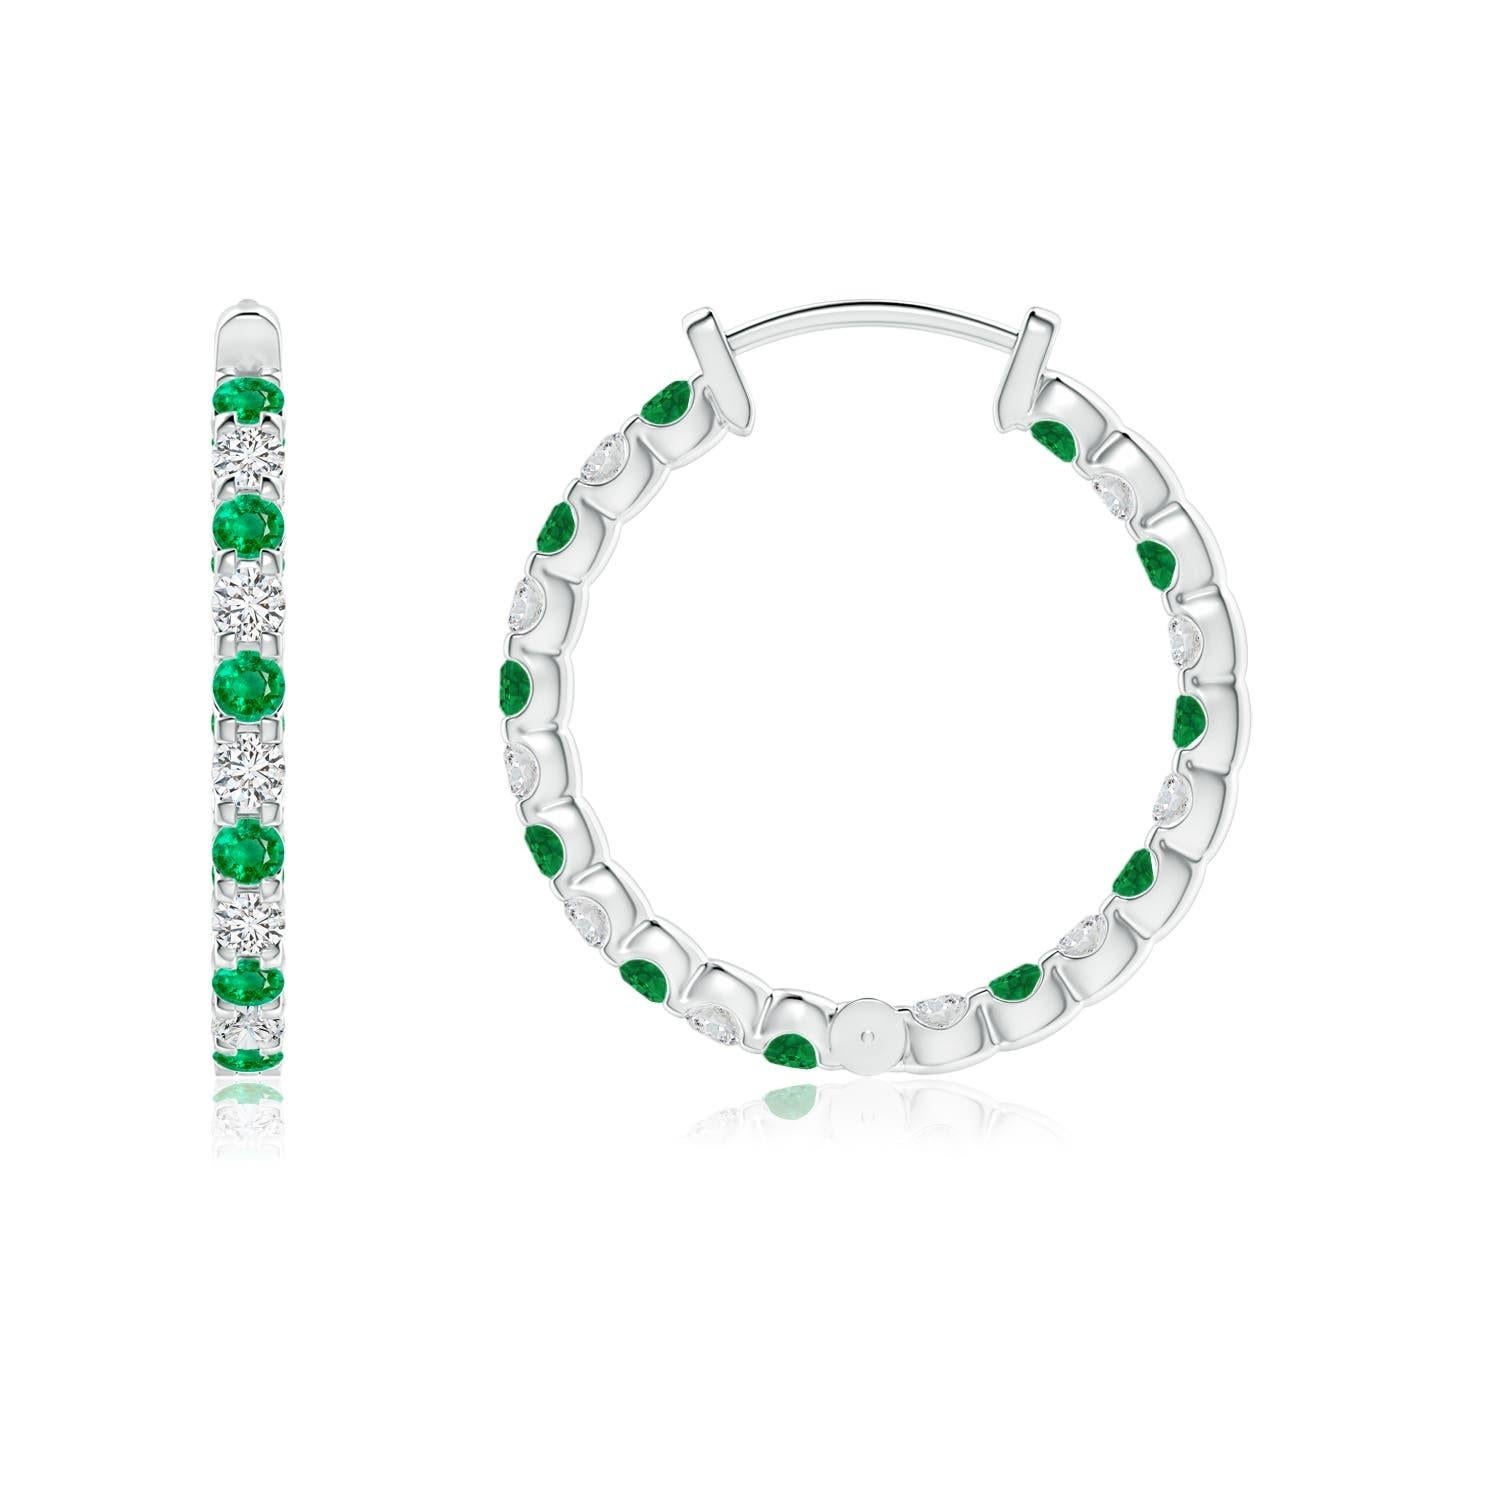 Diese atemberaubenden Ohrringe sind abwechselnd mit üppigen grünen Smaragden und Brillanten in Zackenfassung besetzt. Die funkelnden Edelsteine sind sowohl auf der Außenseite als auch auf der Innenseite dieser Platinreifen verziert und bilden einen